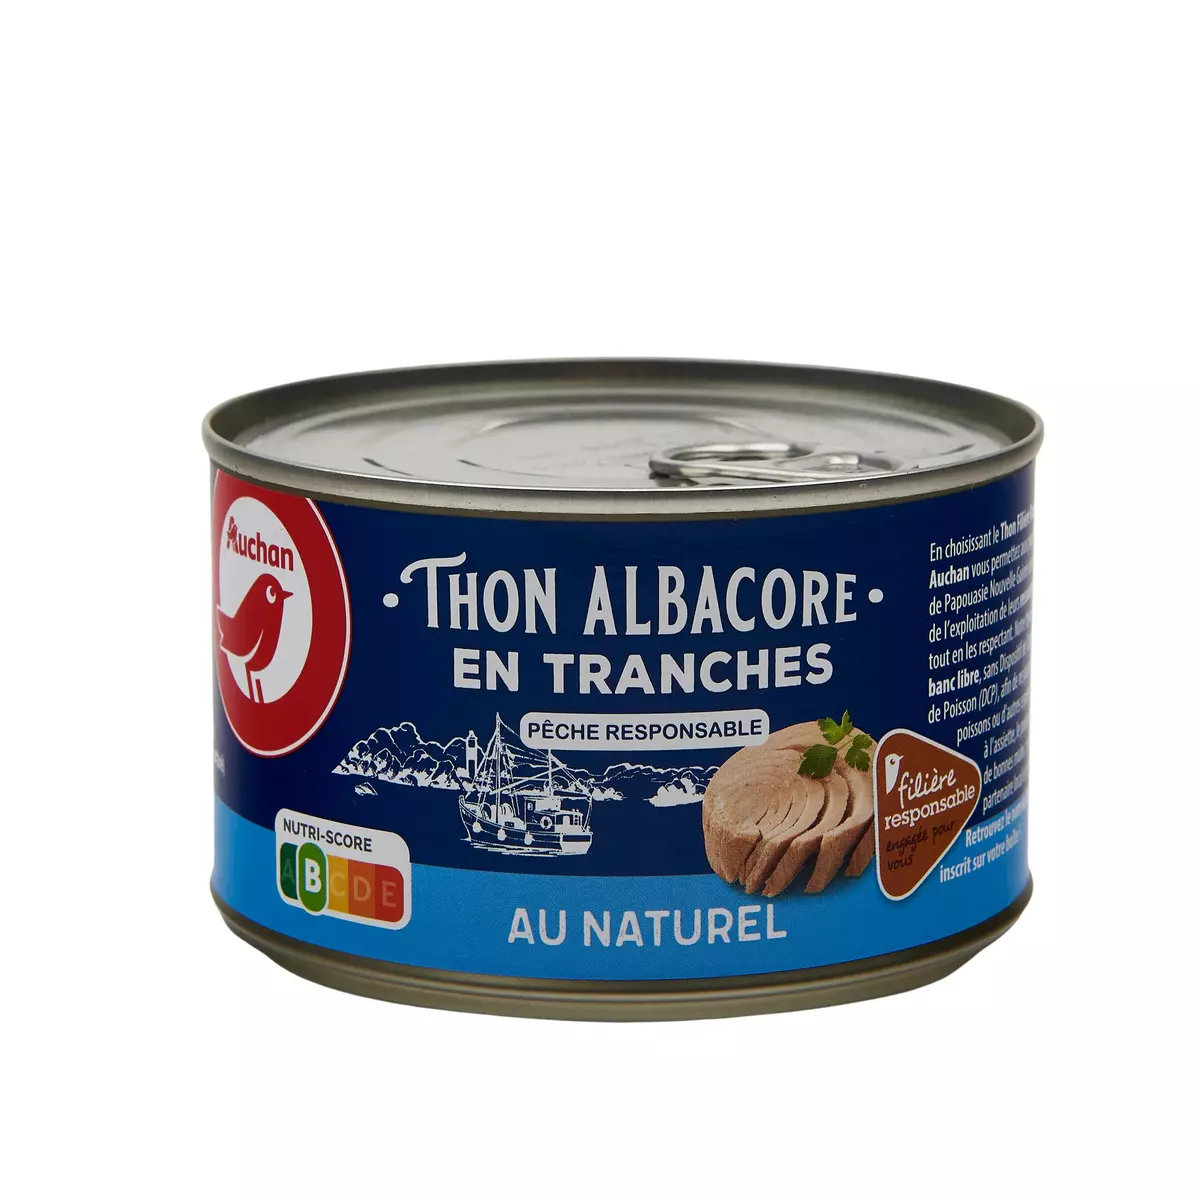 AUCHAN CULTIVONS LE BON thon albacore en tranches au naturel 280g